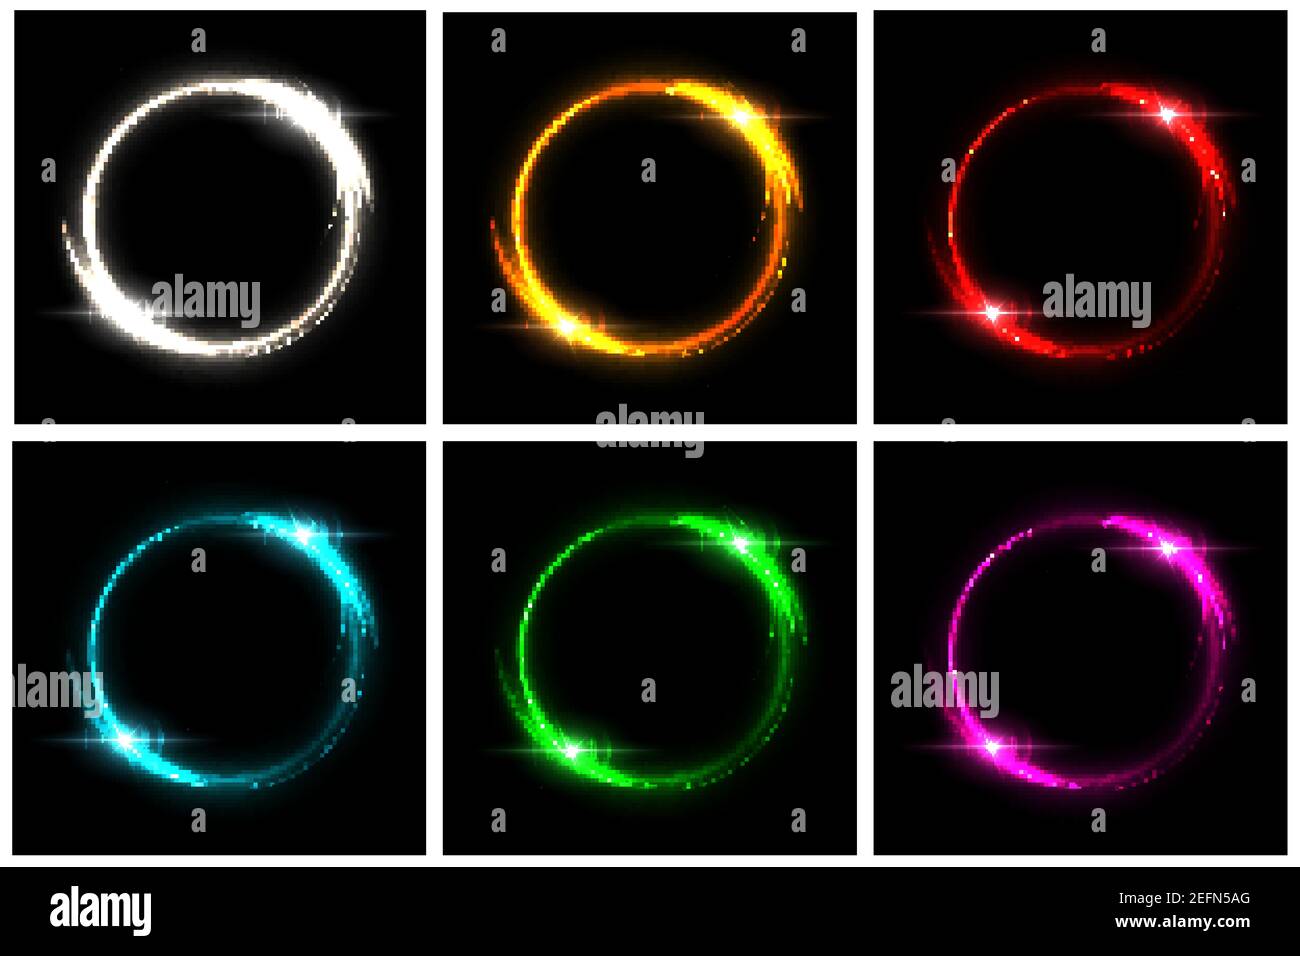 Ensemble de cercles de néon lumineux. Argent, orange, rouge, bleu, vert, cadres de lumière électrique ronds roses avec des étincelles sur fond noir. Mode géométrique desi Illustration de Vecteur